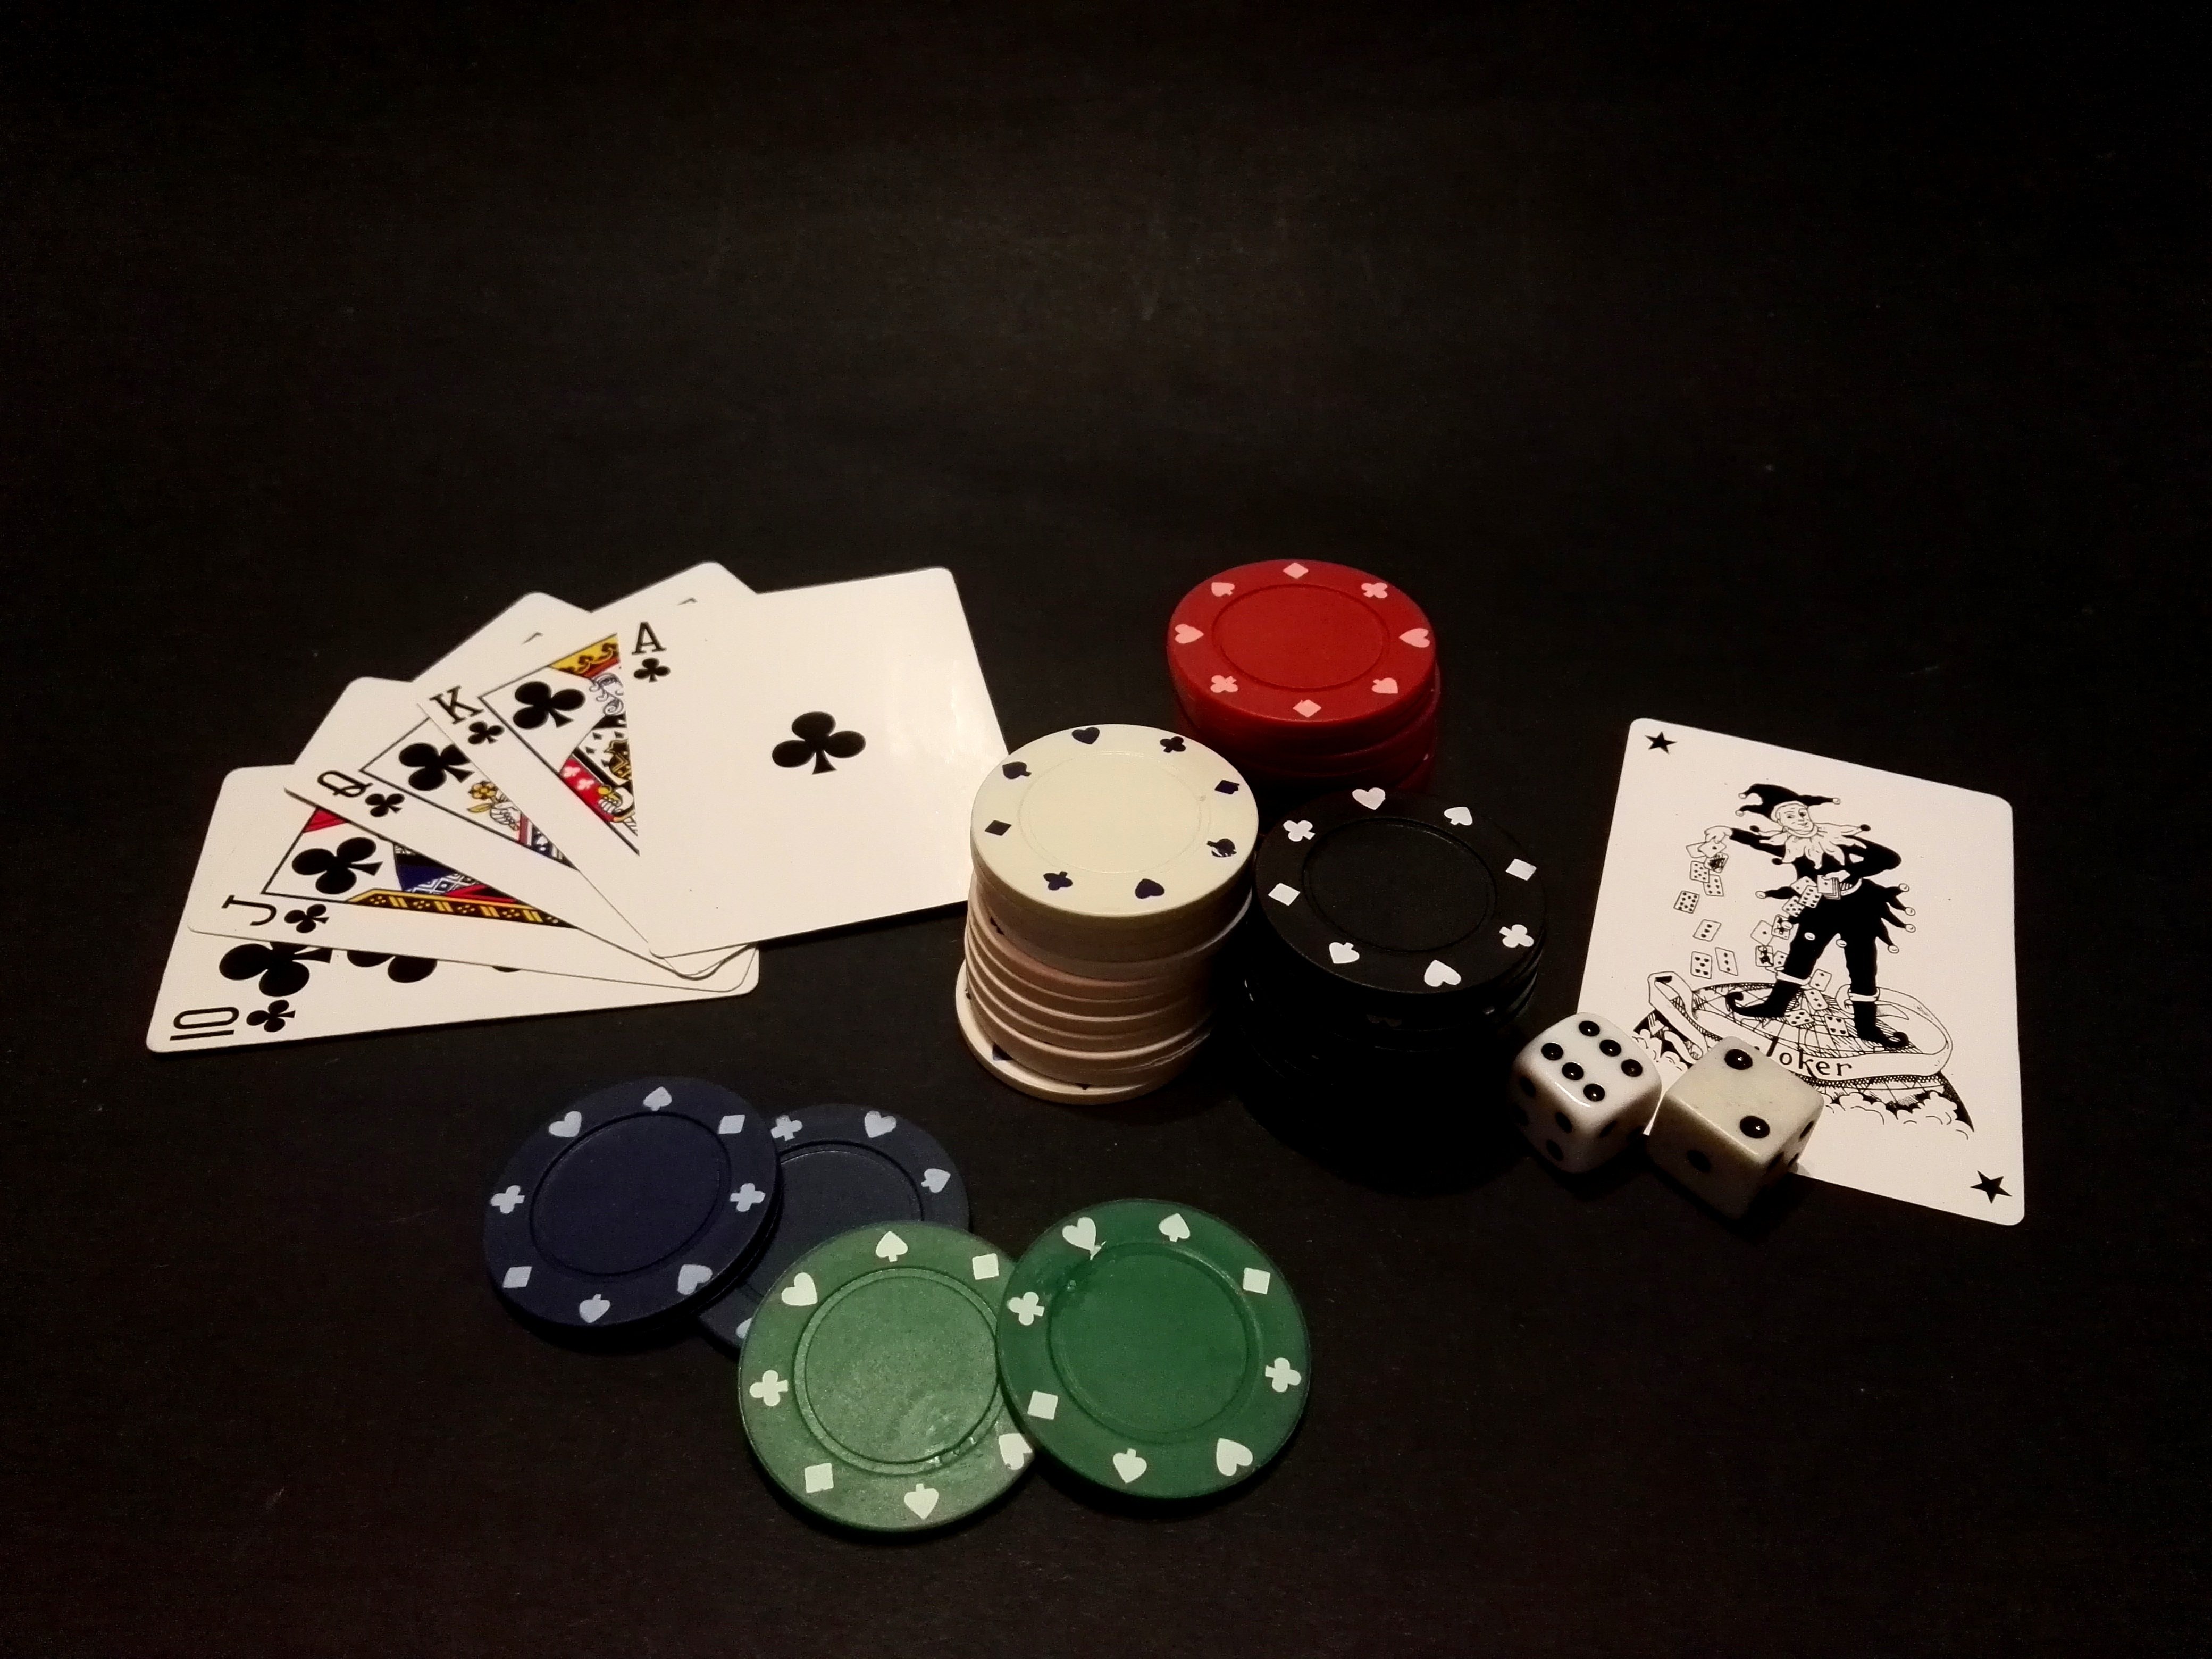 Картинки игр в карты. Покер. Покер карты. Казино карточные столы. Игра Покер карточная.